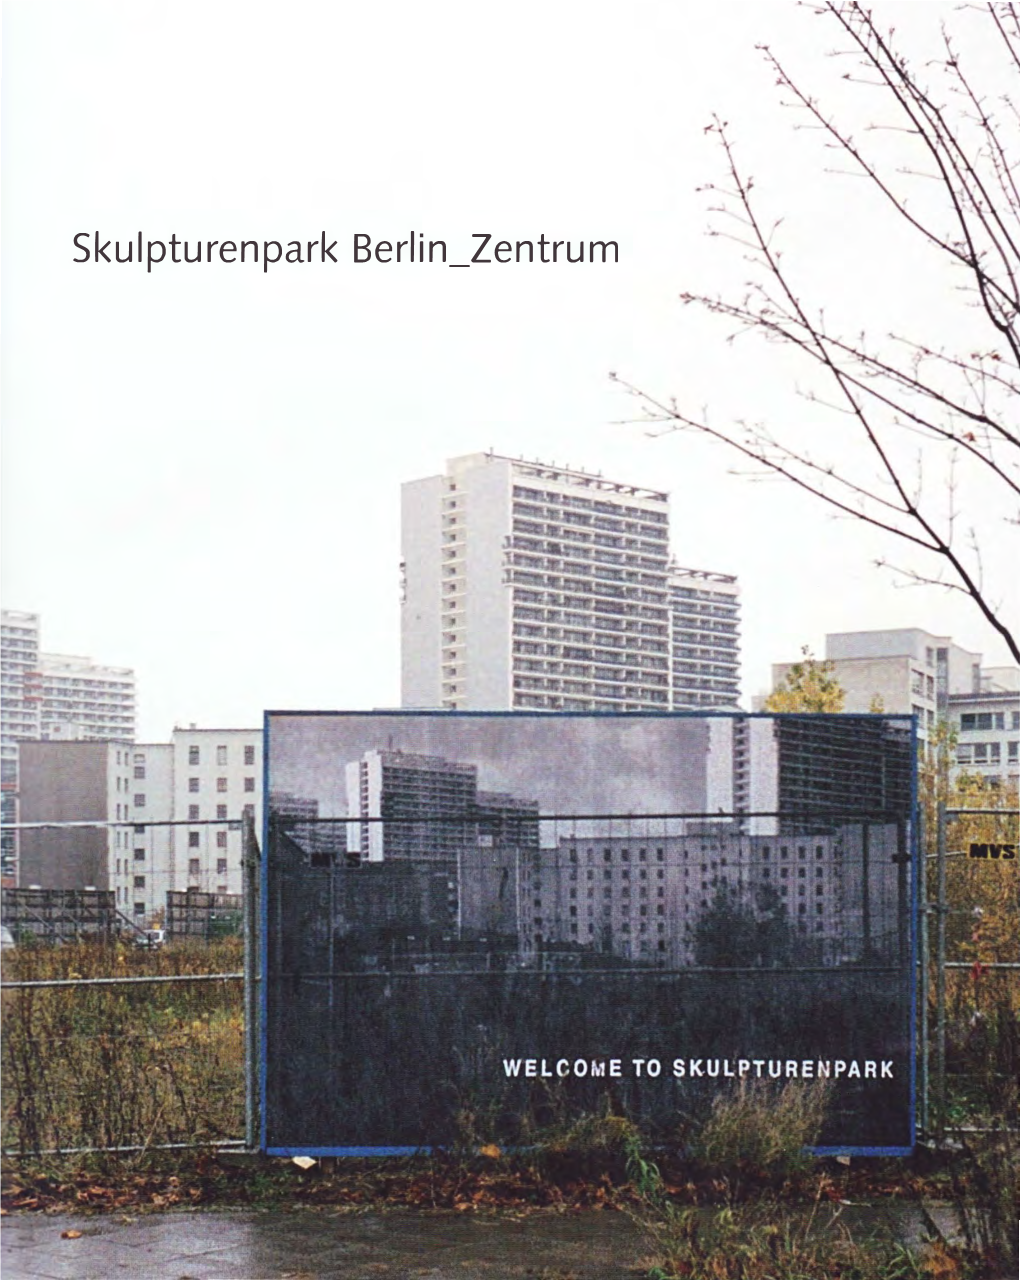 Skulpturenpark Berlin Zentrum